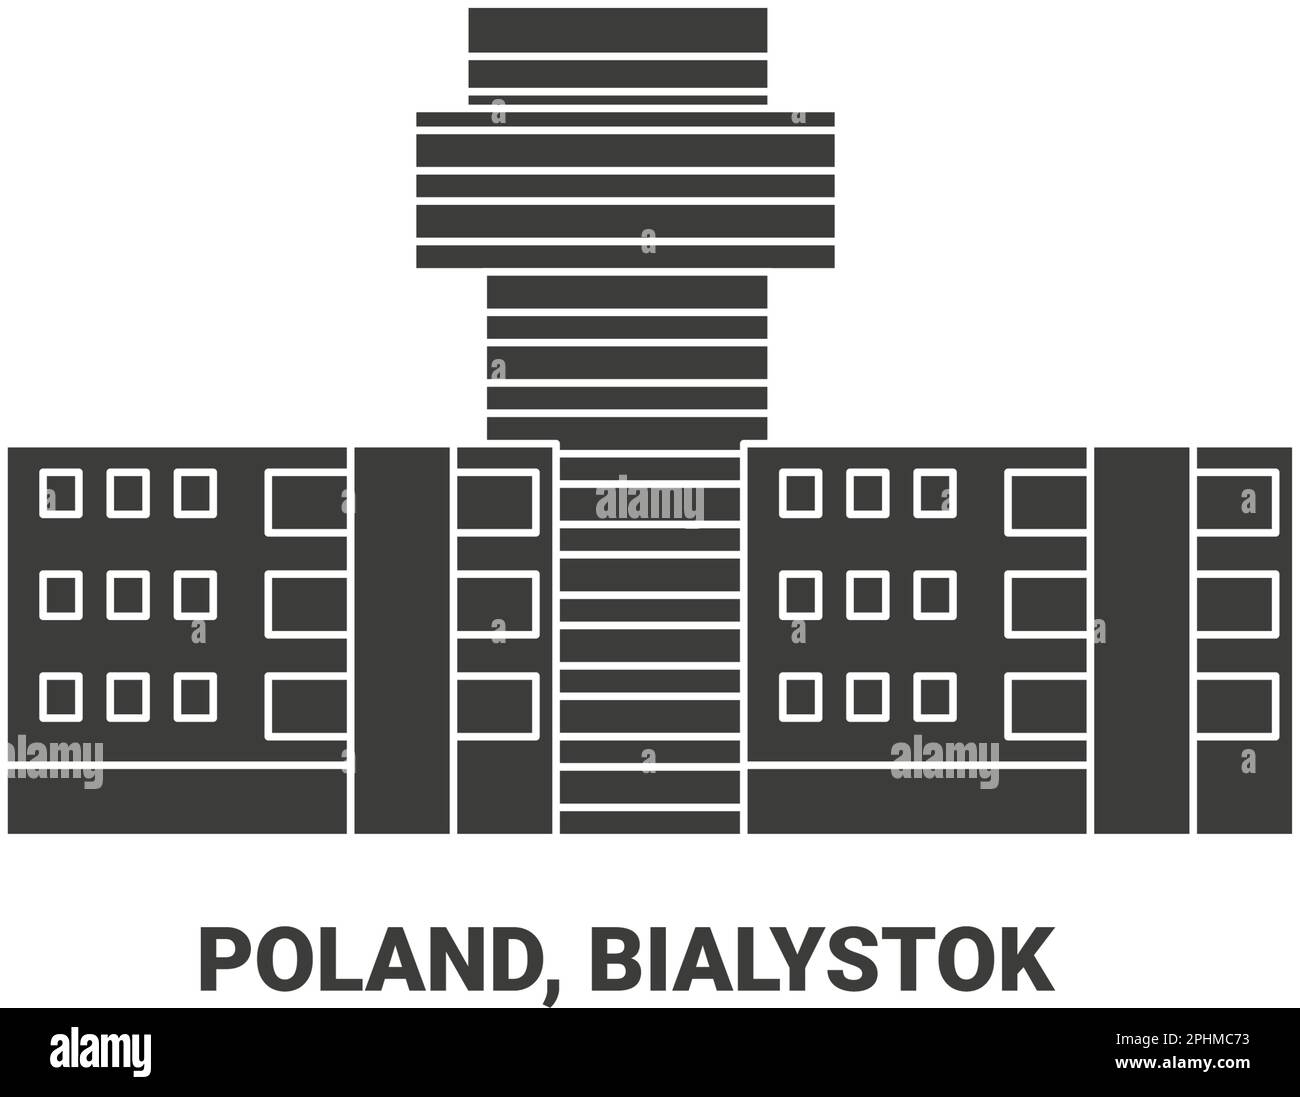 Polen, Bialystok, Reise-Wahrzeichen-Vektordarstellung Stock Vektor